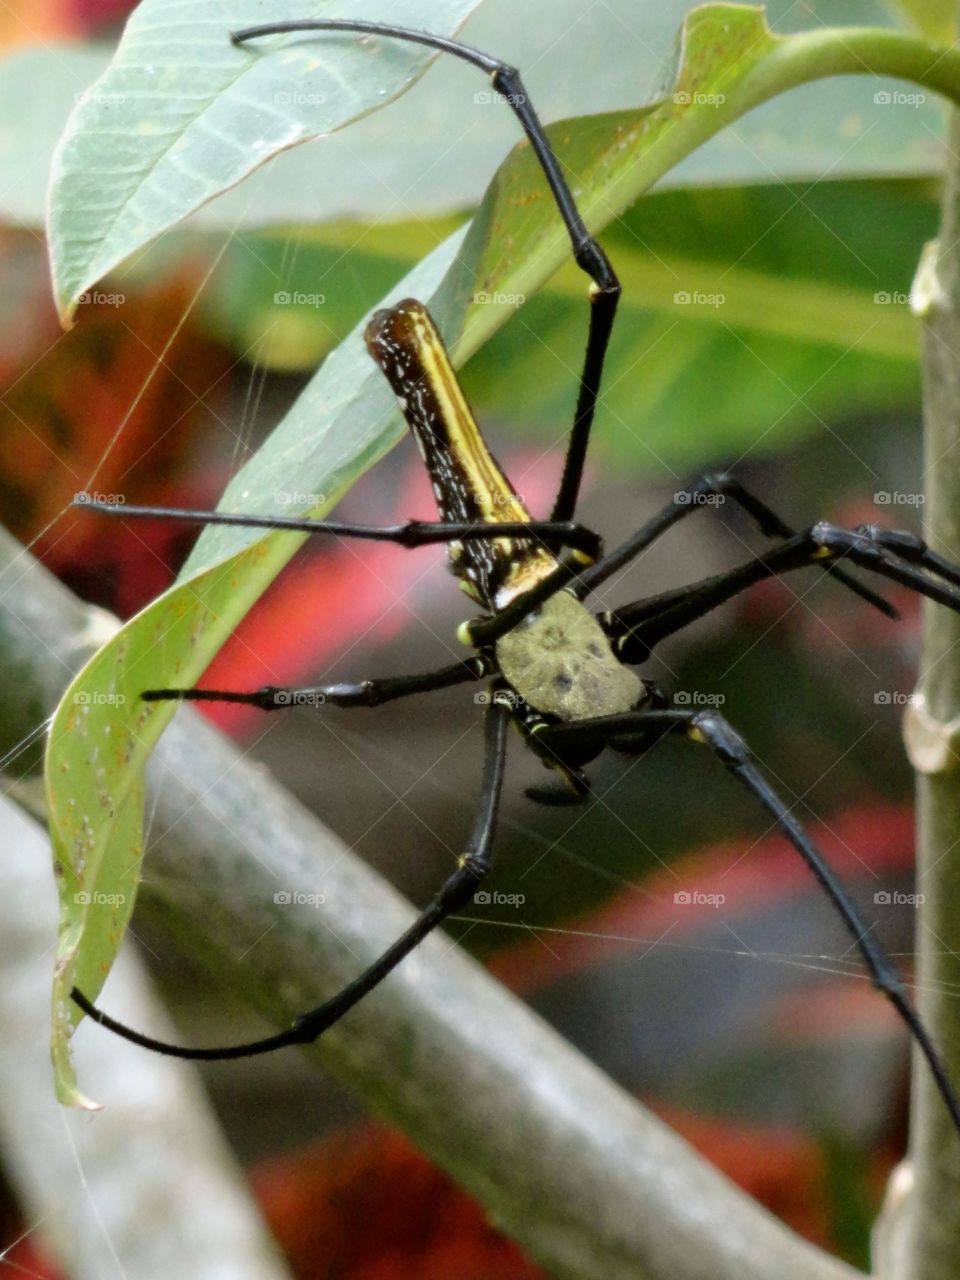 Spider in Bali